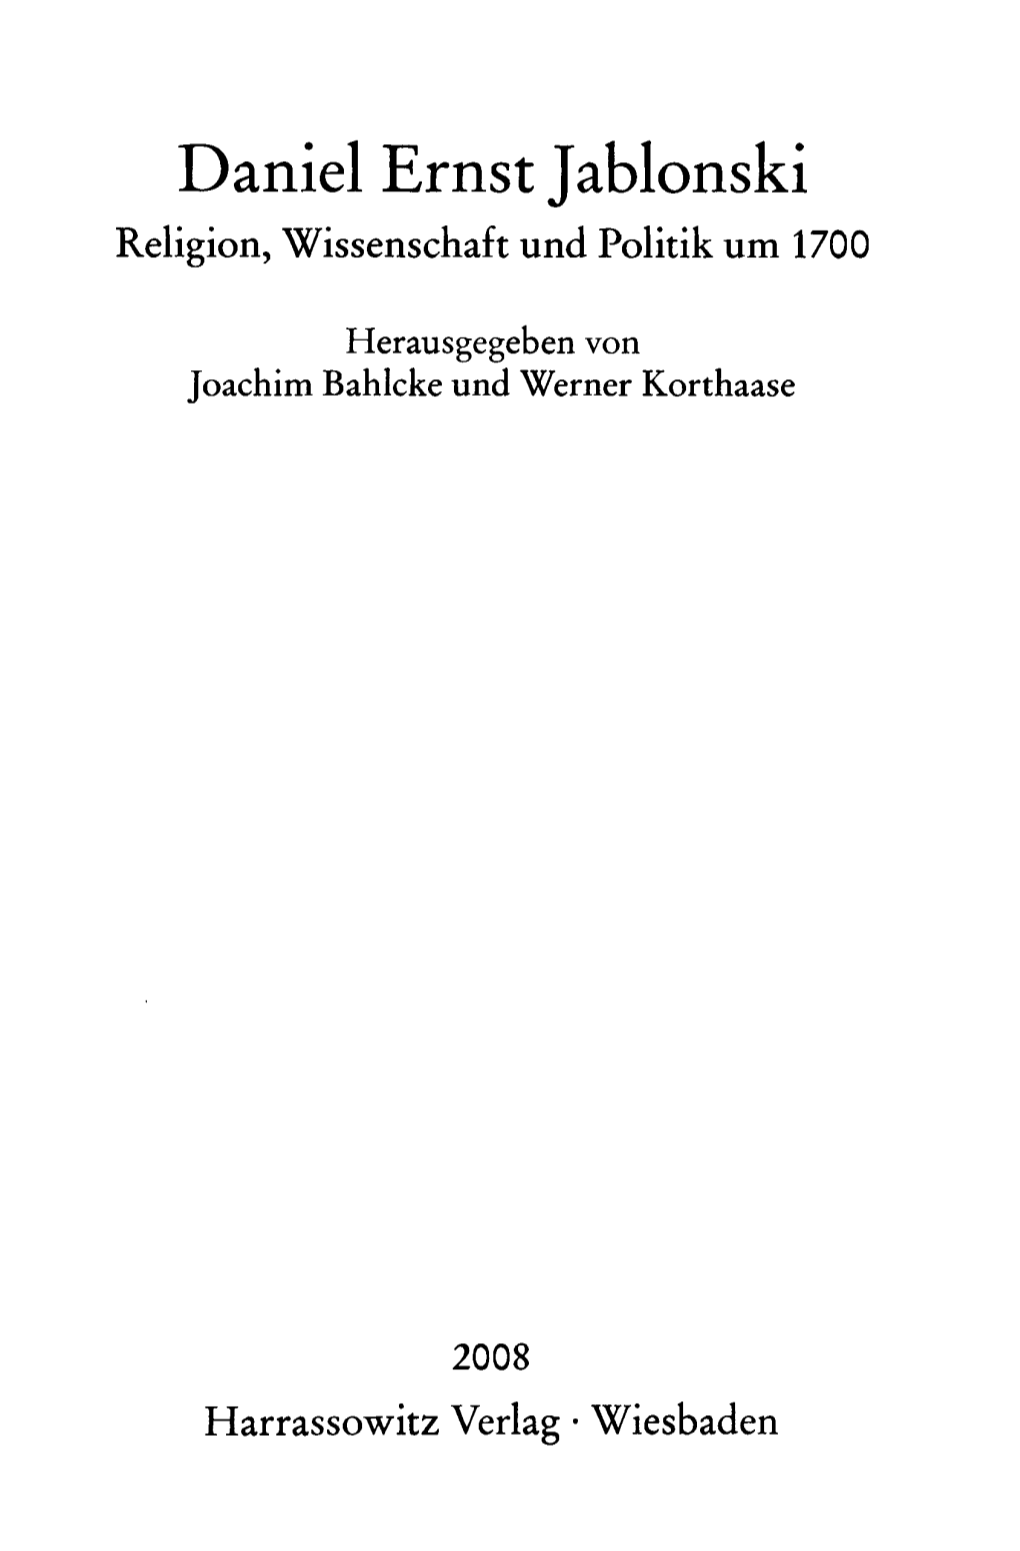 Daniel Ernst Jablonski Religion, Wissenschaft Und Politik Um 1700